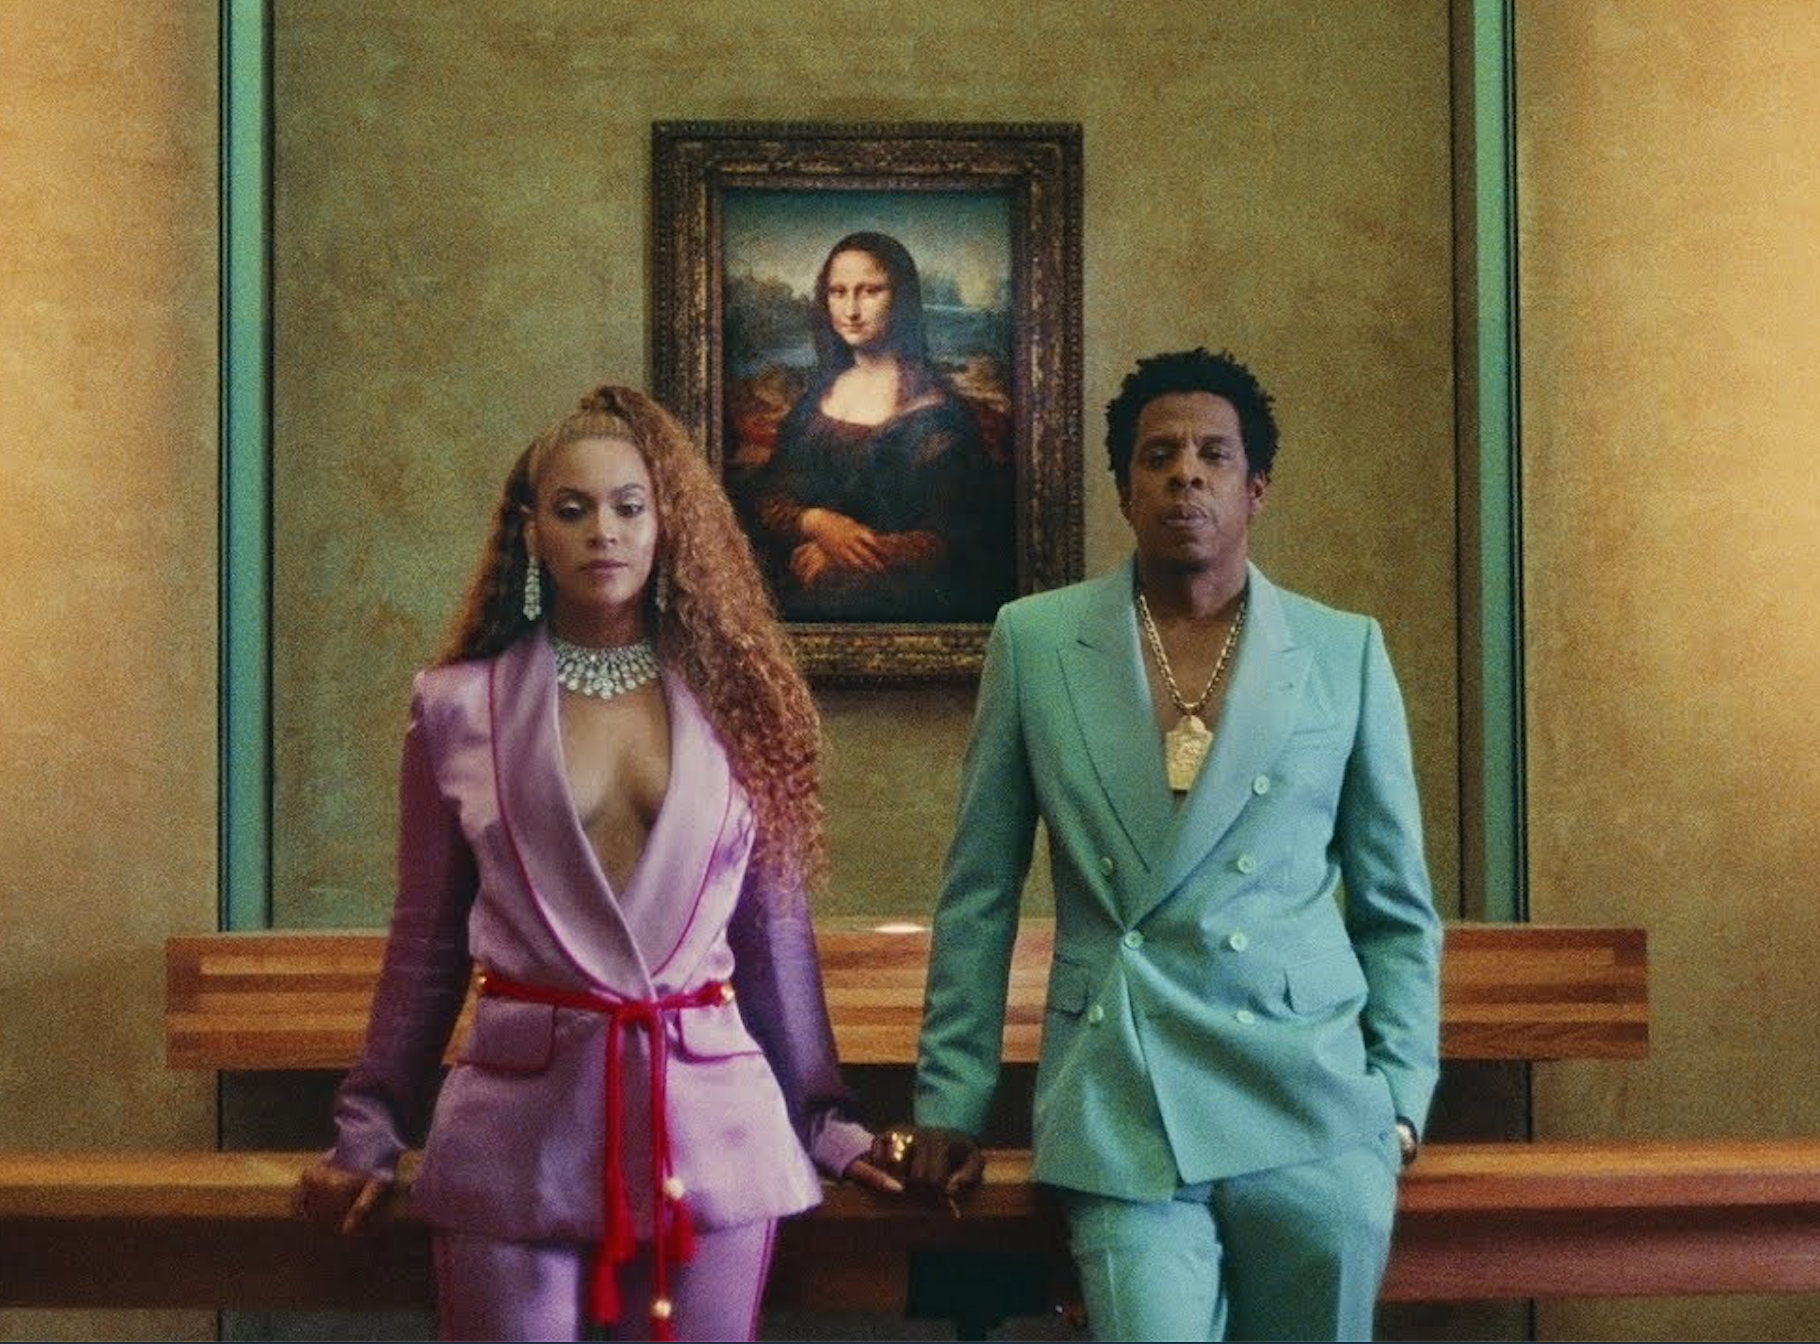 Förutom att posera framför ”Mona Lisa” släppte Beyoncé och Jay-Z ett nytt gemensamt album under namnet The Carters i helgen. 